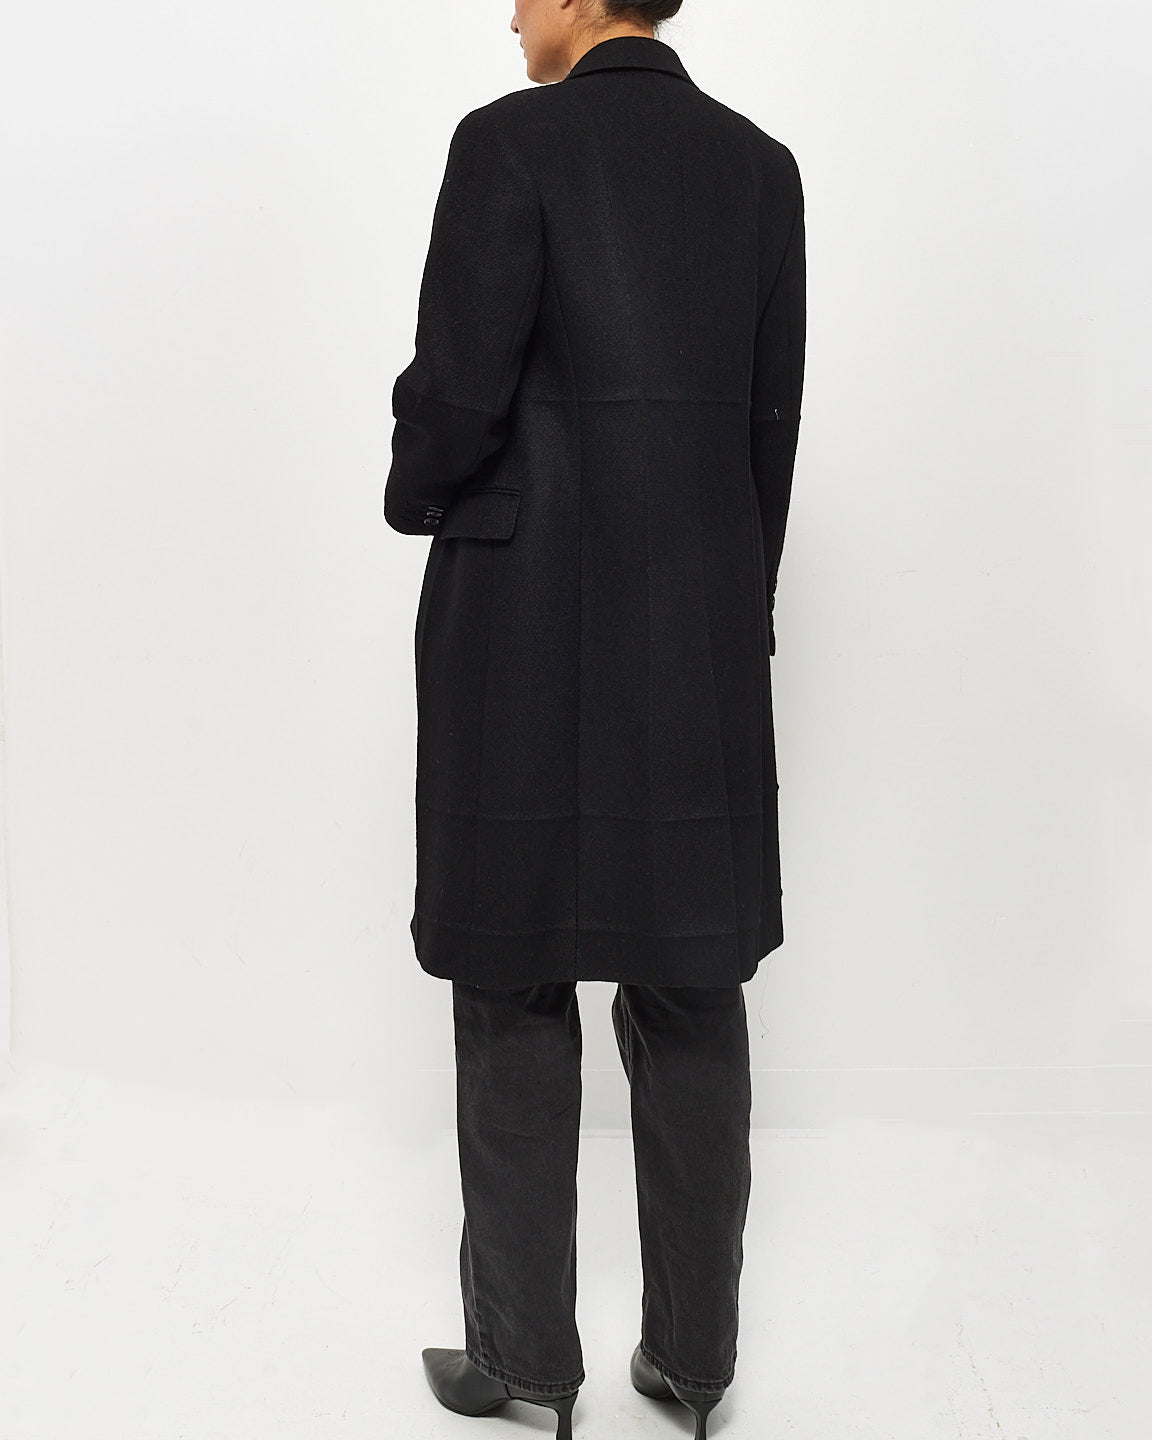 Prada Manteau long en laine polaire noire - 42 (US 6)